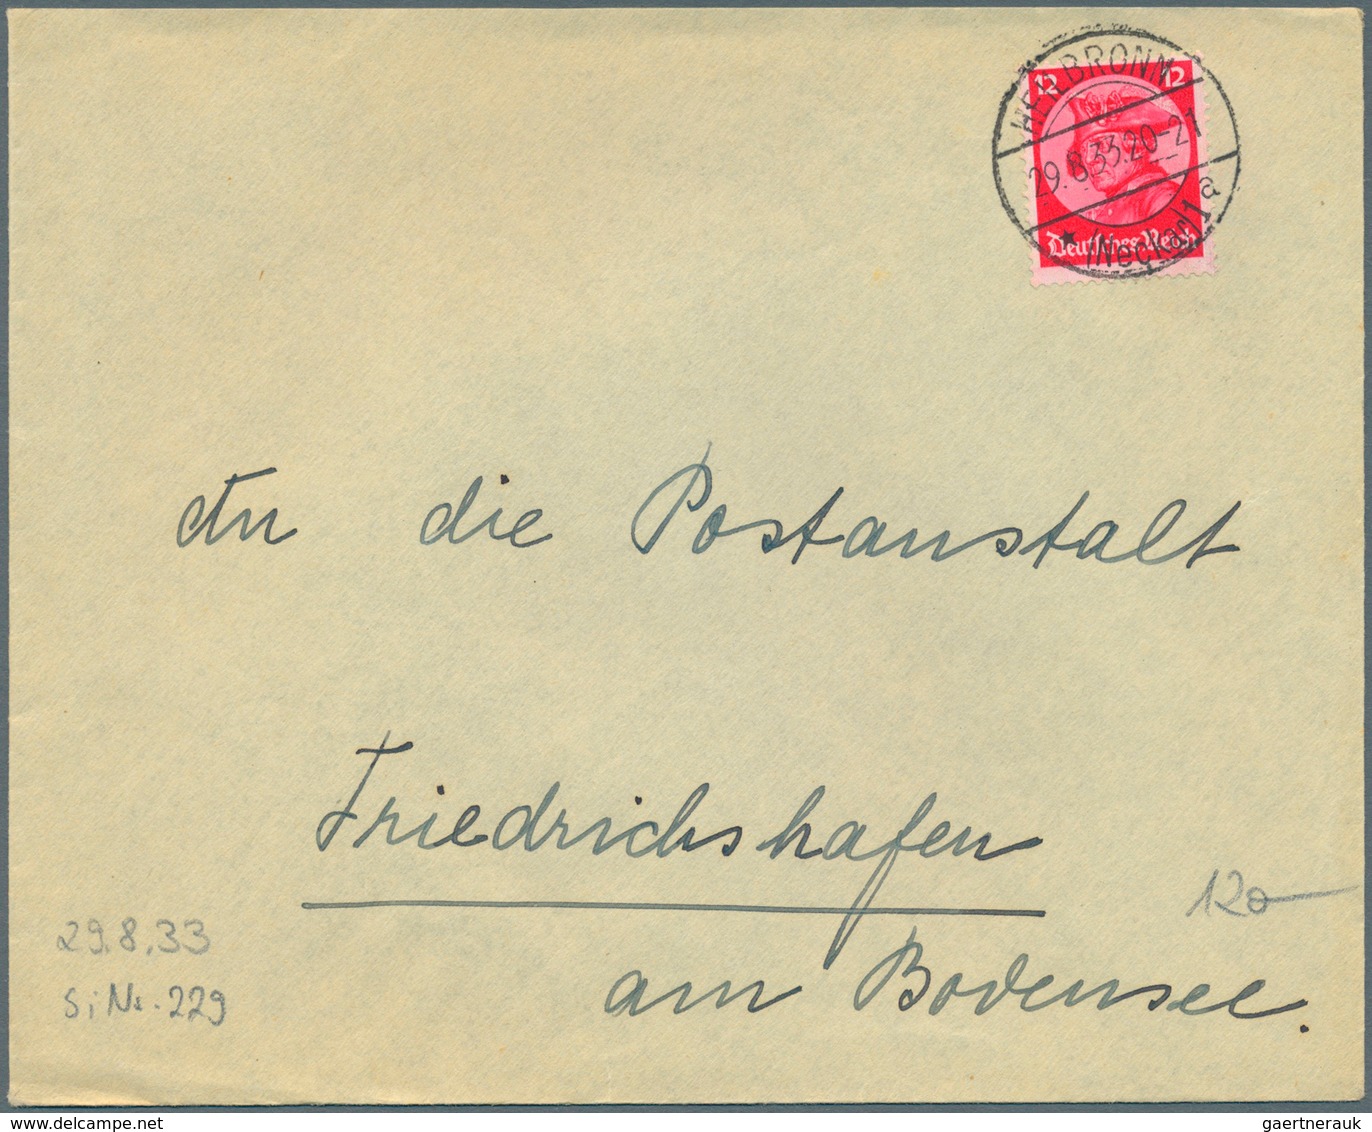 24845 Zeppelinpost Deutschland: 1929/33, 125 Briefe adressiert nach Friedrichshafen an das dortige Postamt